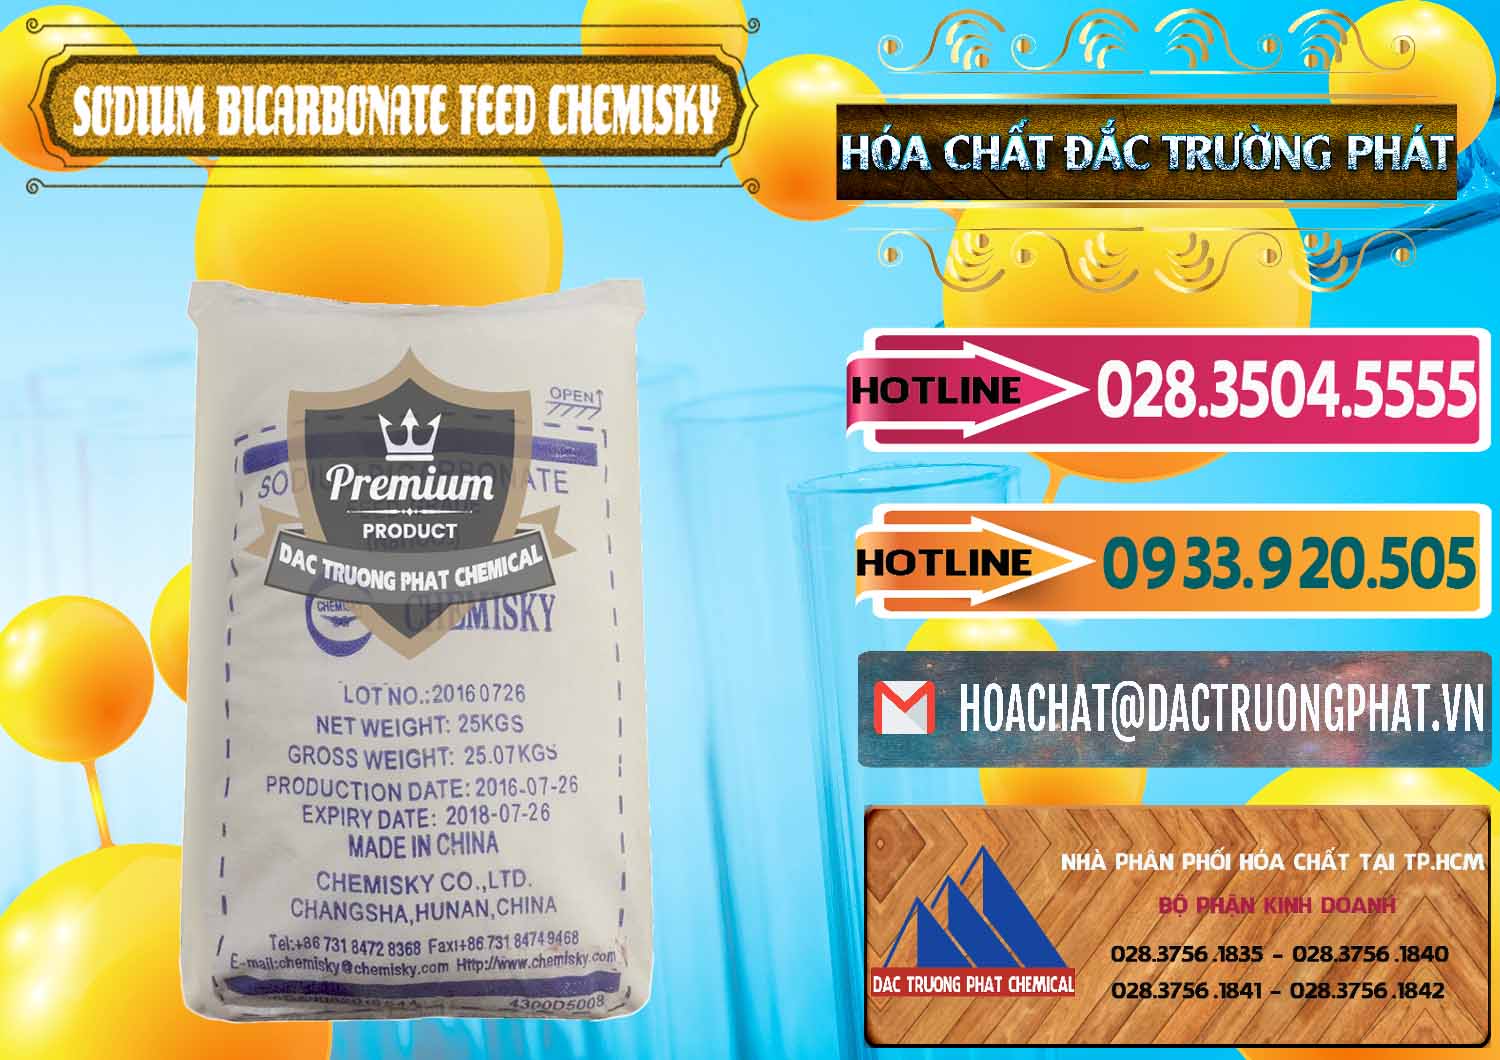 Cty chuyên nhập khẩu _ bán Sodium Bicarbonate – Bicar NaHCO3 Feed Grade Chemisky Trung Quốc China - 0264 - Nhà phân phối - cung cấp hóa chất tại TP.HCM - dactruongphat.vn